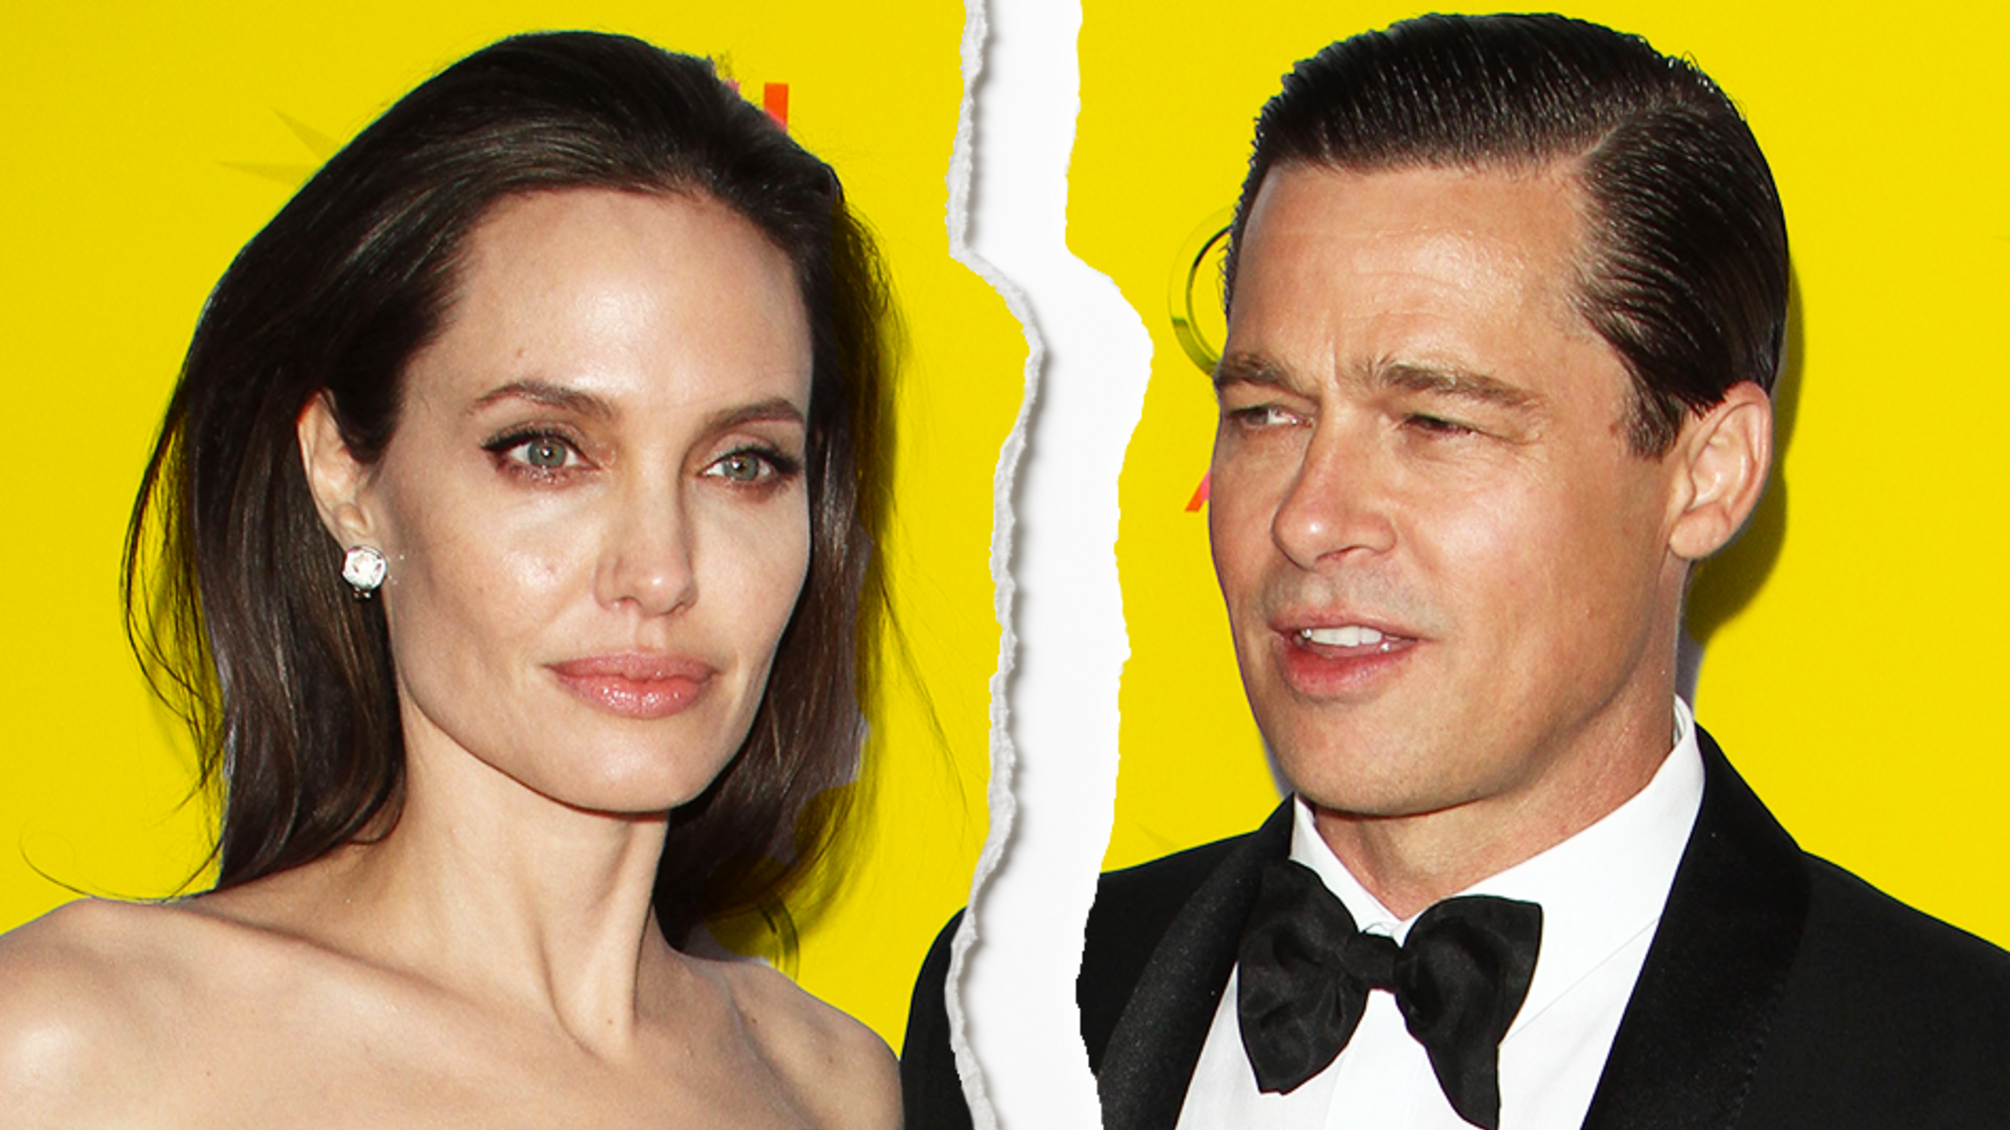 О разводе с Брэдом Питтом и карьере: актриса Анджелина Джоли дала откровенное интервью